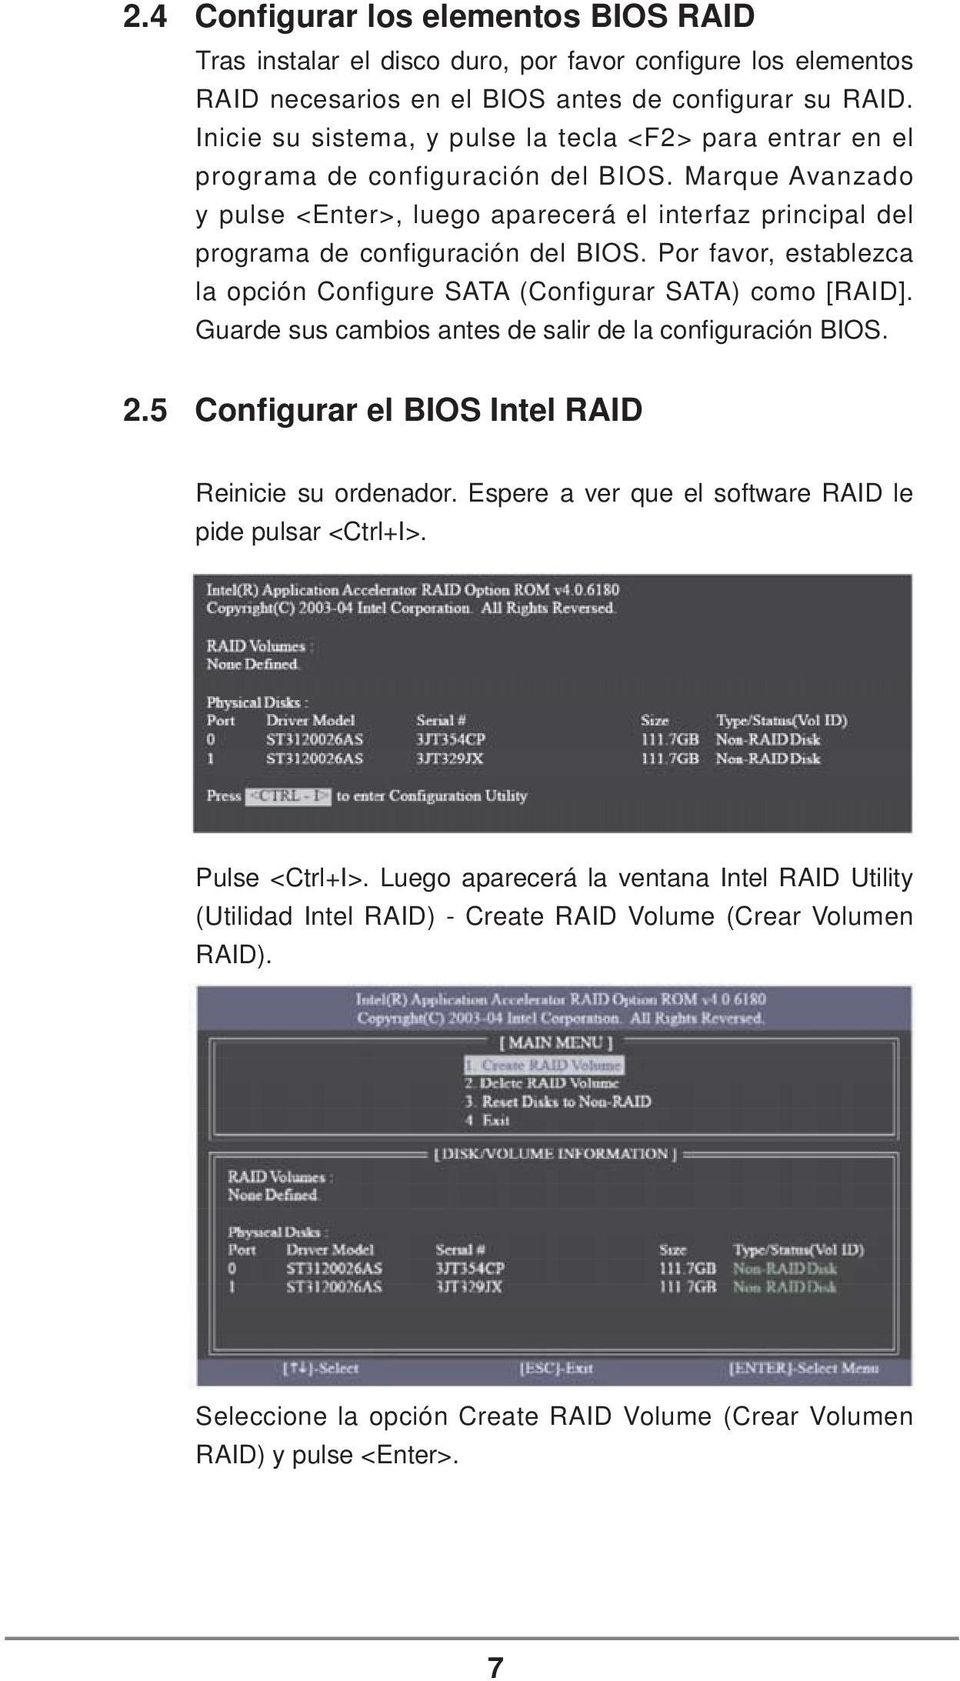 Marque Avanzado y pulse <Enter>, luego aparecerá el interfaz principal del programa de configuración del BIOS. Por favor, establezca la opción Configure SATA (Configurar SATA) como [RAID].